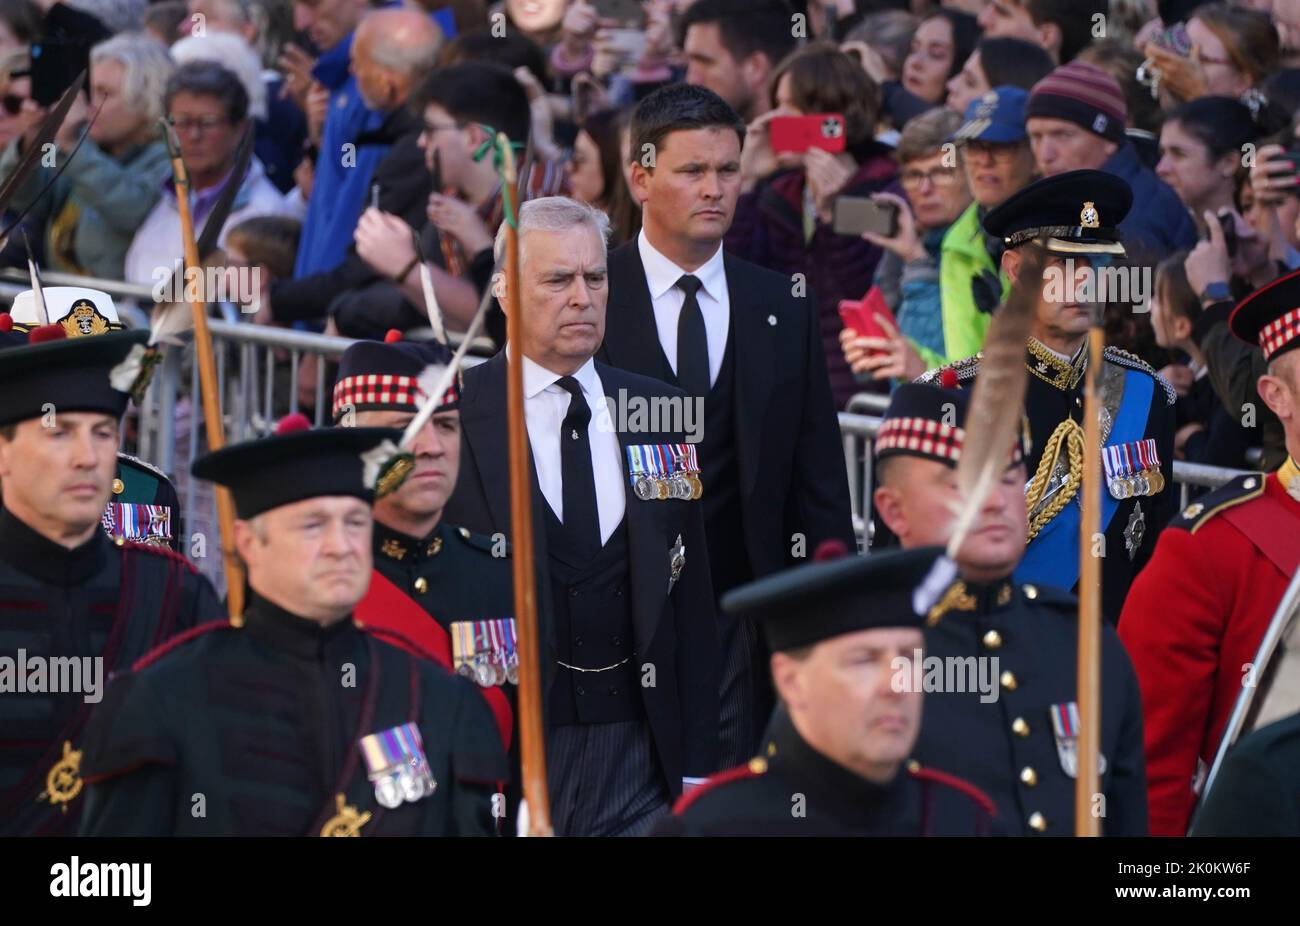 El Duque de York (centro) y el Conde de Wessex (derecha) caminan detrás del ataúd de la Reina Isabel II durante la procesión desde el Palacio de Holyroodhouse hasta la Catedral de San Giles, Edimburgo. Fecha de la foto: Lunes 12 de septiembre de 2022. Foto de stock